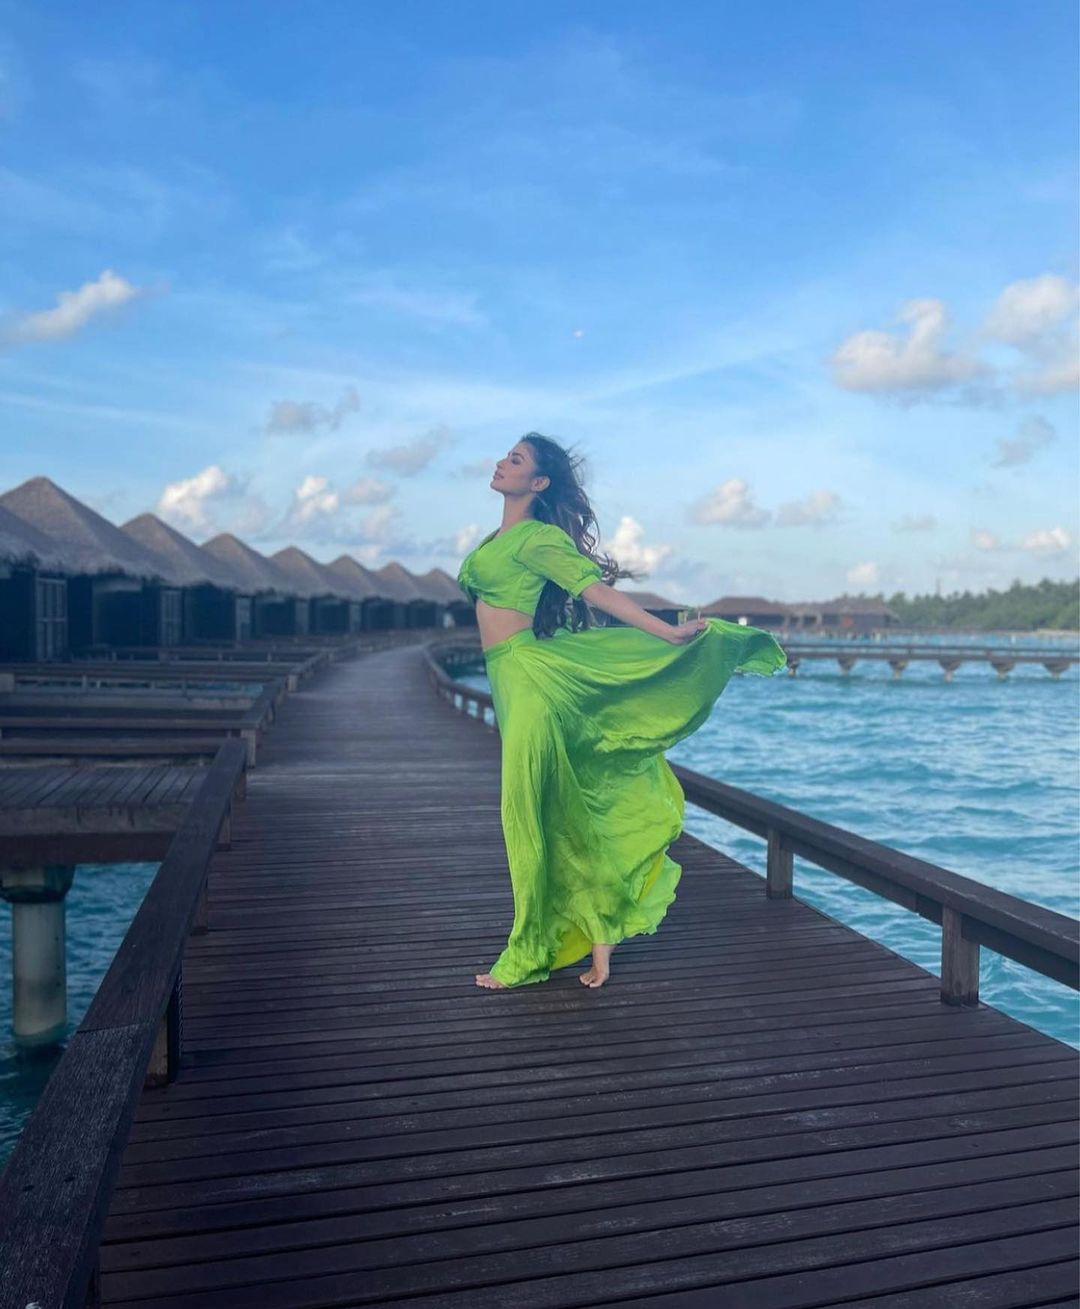 मालदीव व्हॅकेशनचे काही निवडक फोटो मौनीने तिच्या इन्स्टाग्राम अकाऊंटवरून शेअर केले आहेत.